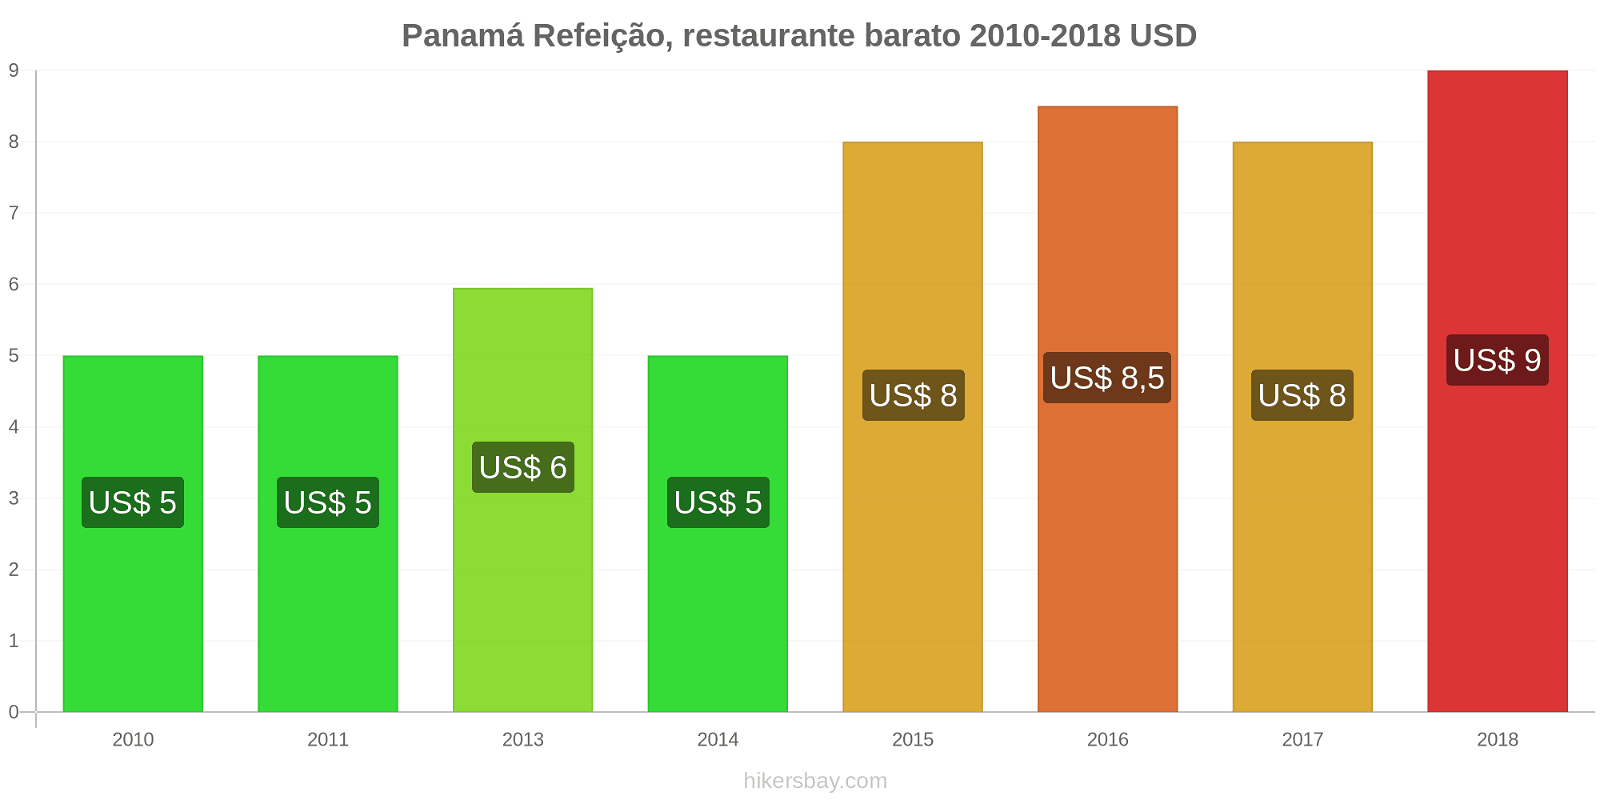 Panamá mudanças de preços Refeição em um restaurante econômico hikersbay.com